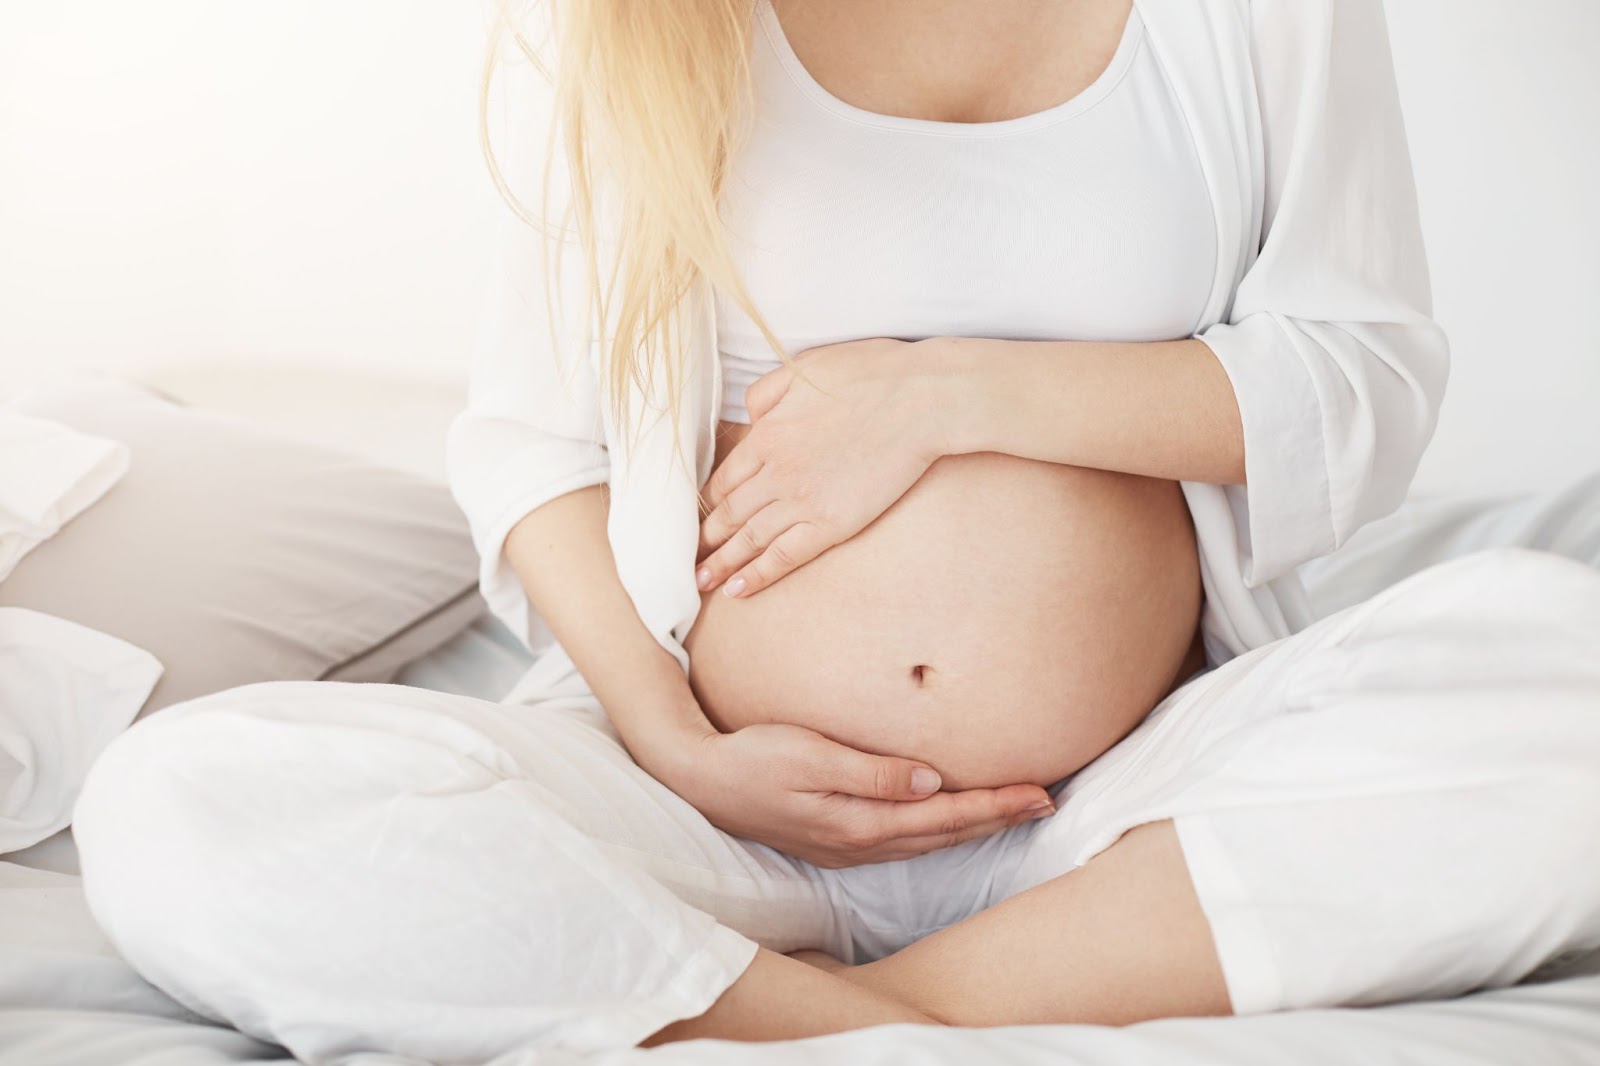 femme enceinte en tenue blanche - 
grossesse